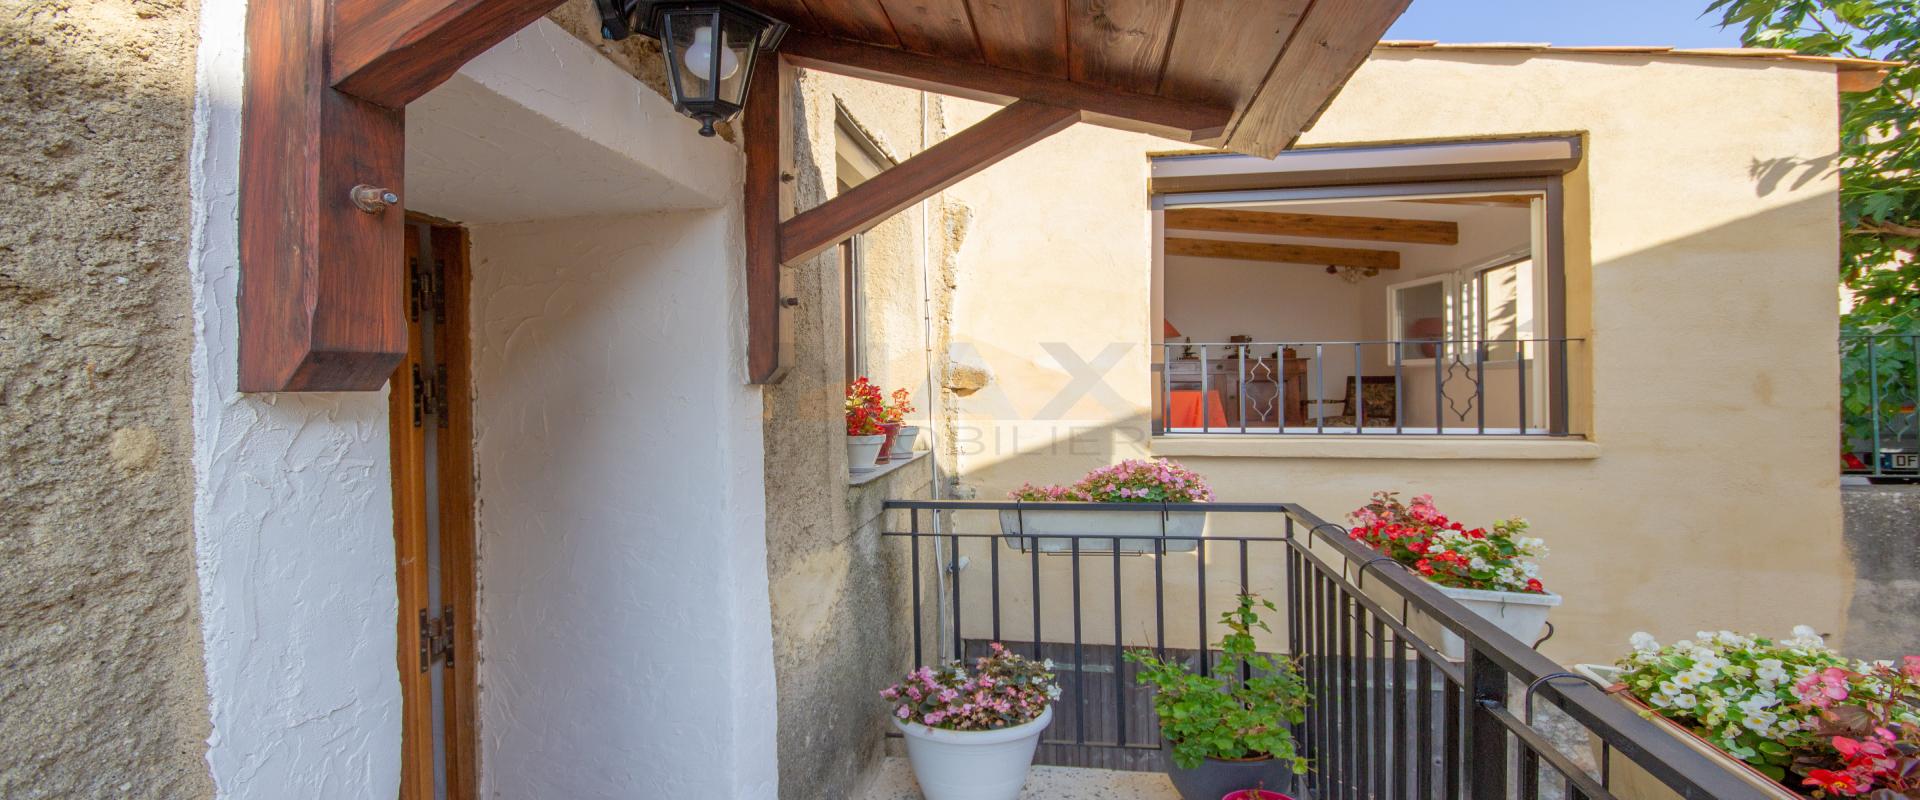 En Corse, à proximité d’AJACCIO, à ALATA, Vente d'un appartement de 110 m2 habitables au cœur du village.